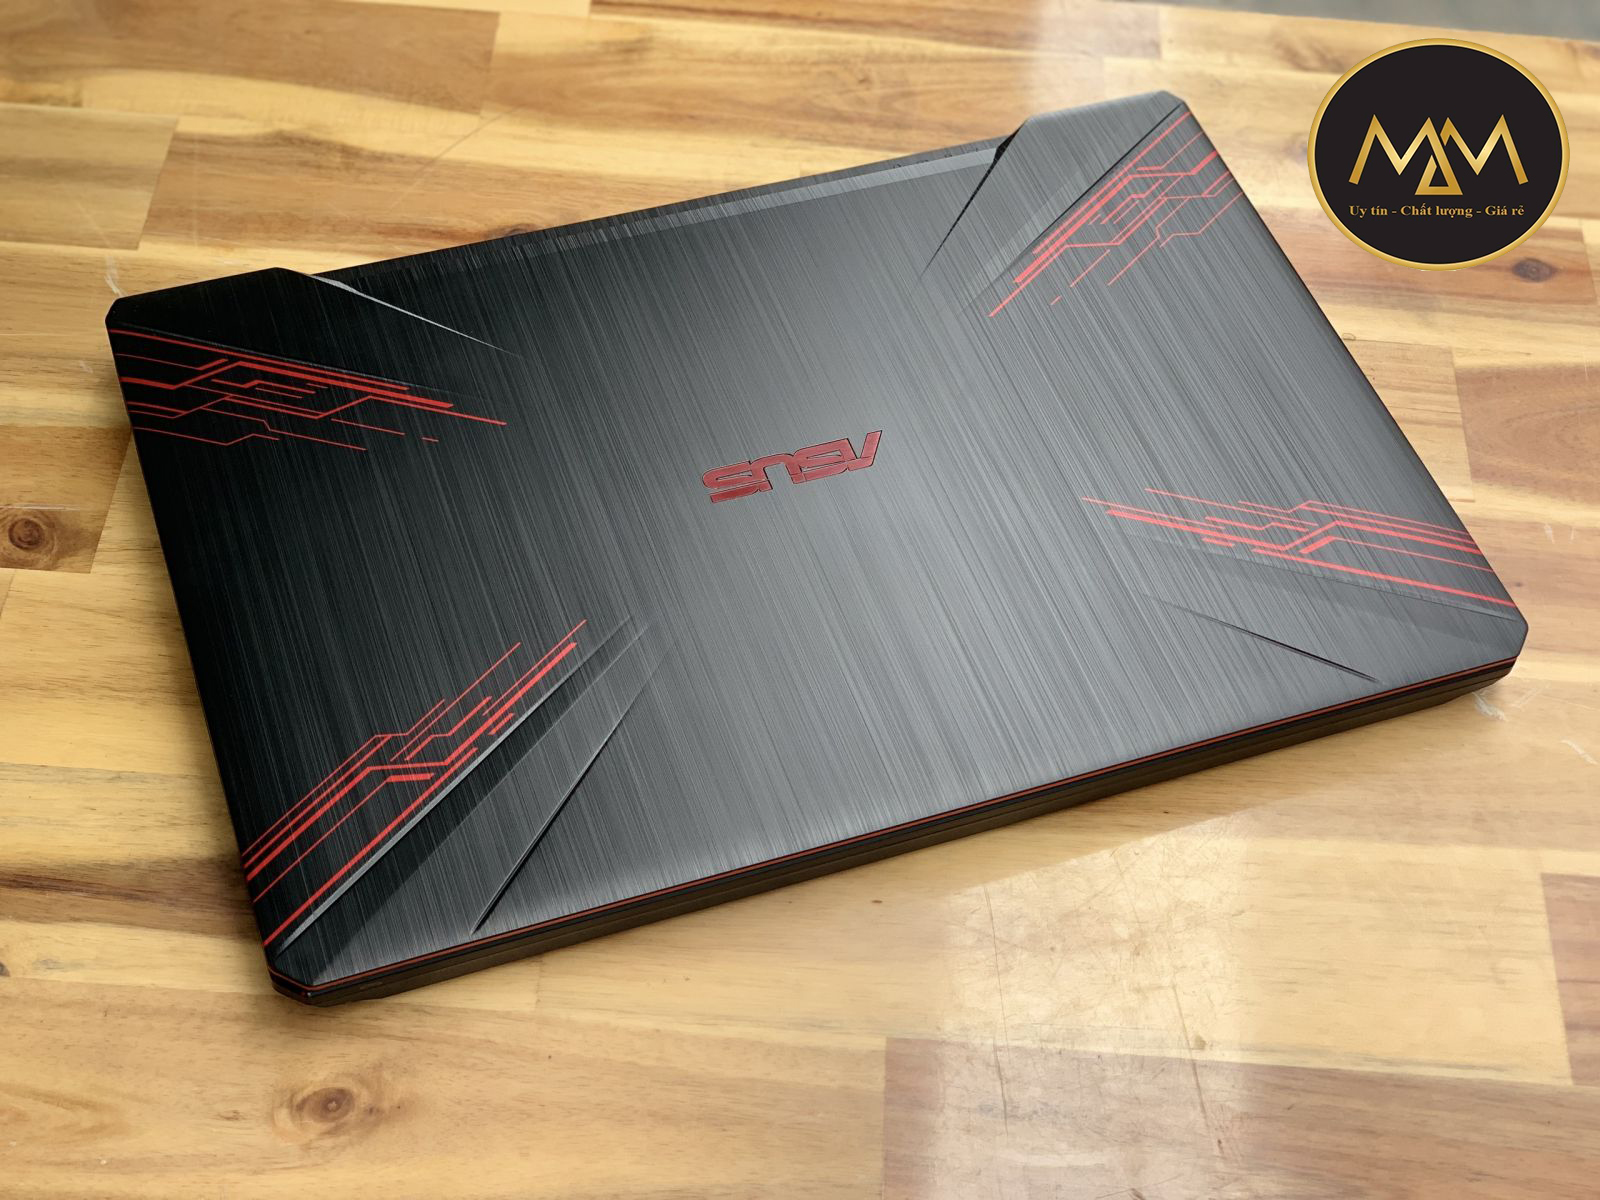 Laptop Asus TUF FX504GE - EN047T I7 8750H/ 8G/ SSD128 + 1000G/ GTX1050TI 4G/ LED Đỏ/ Chuyên Game1